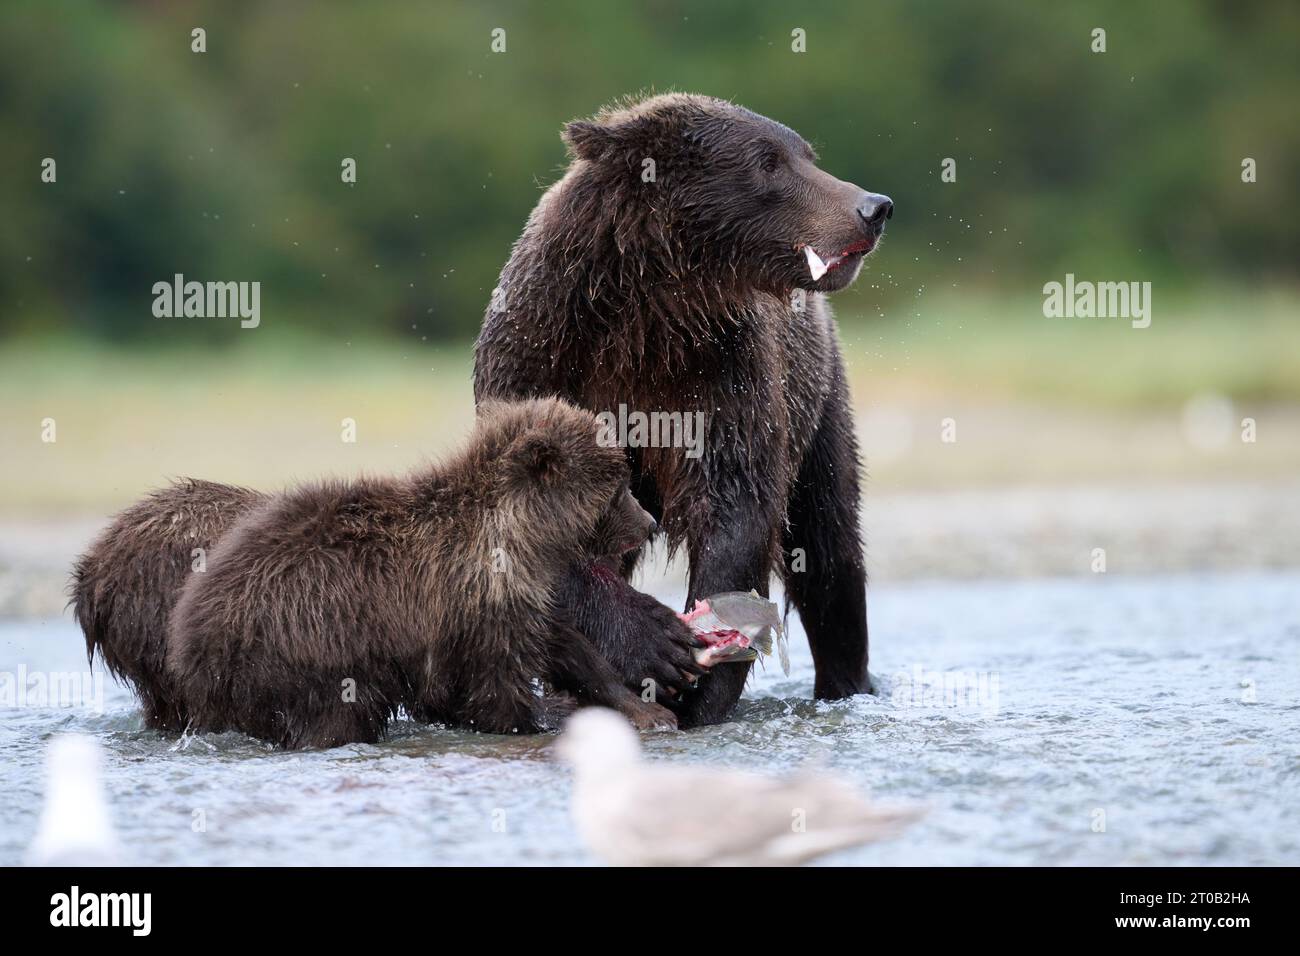 Kodiak Bär Familie teilt Essen ALASKA AUFREGENDE Bilder einer Mutter Kodiak Bär mit ihren beiden Jungen zeigen den ?Grizzly? Familie genießt süße Familienzeit Stockfoto